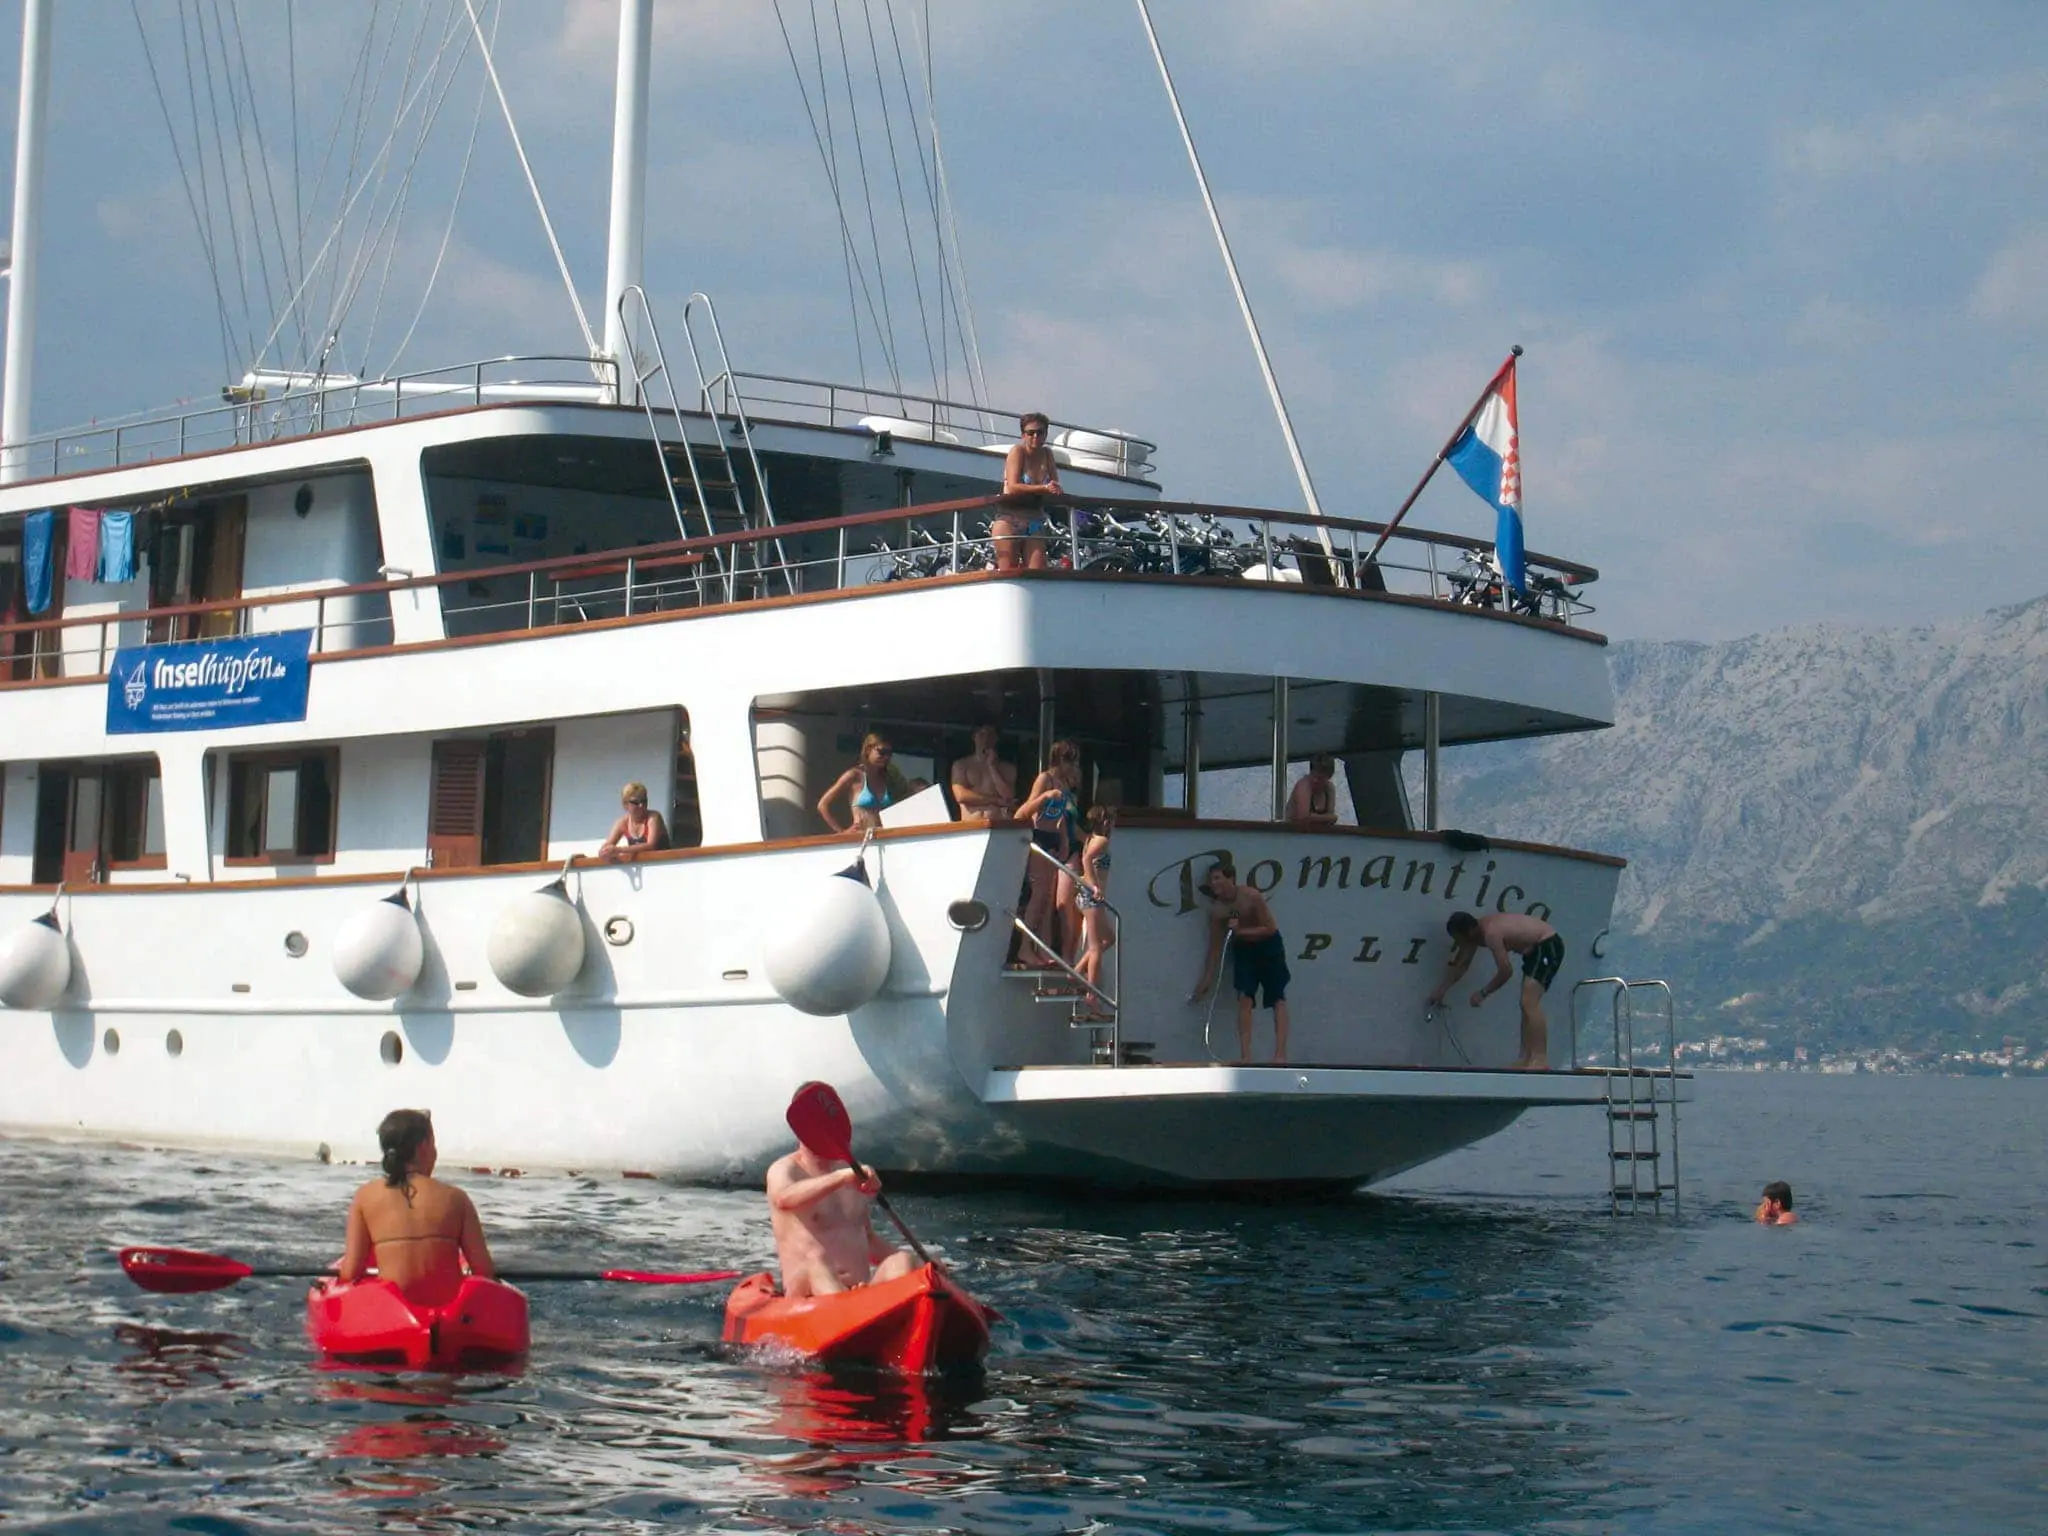 Tour De Vines Croatia Ships Guest Pictures Romantica Swimming